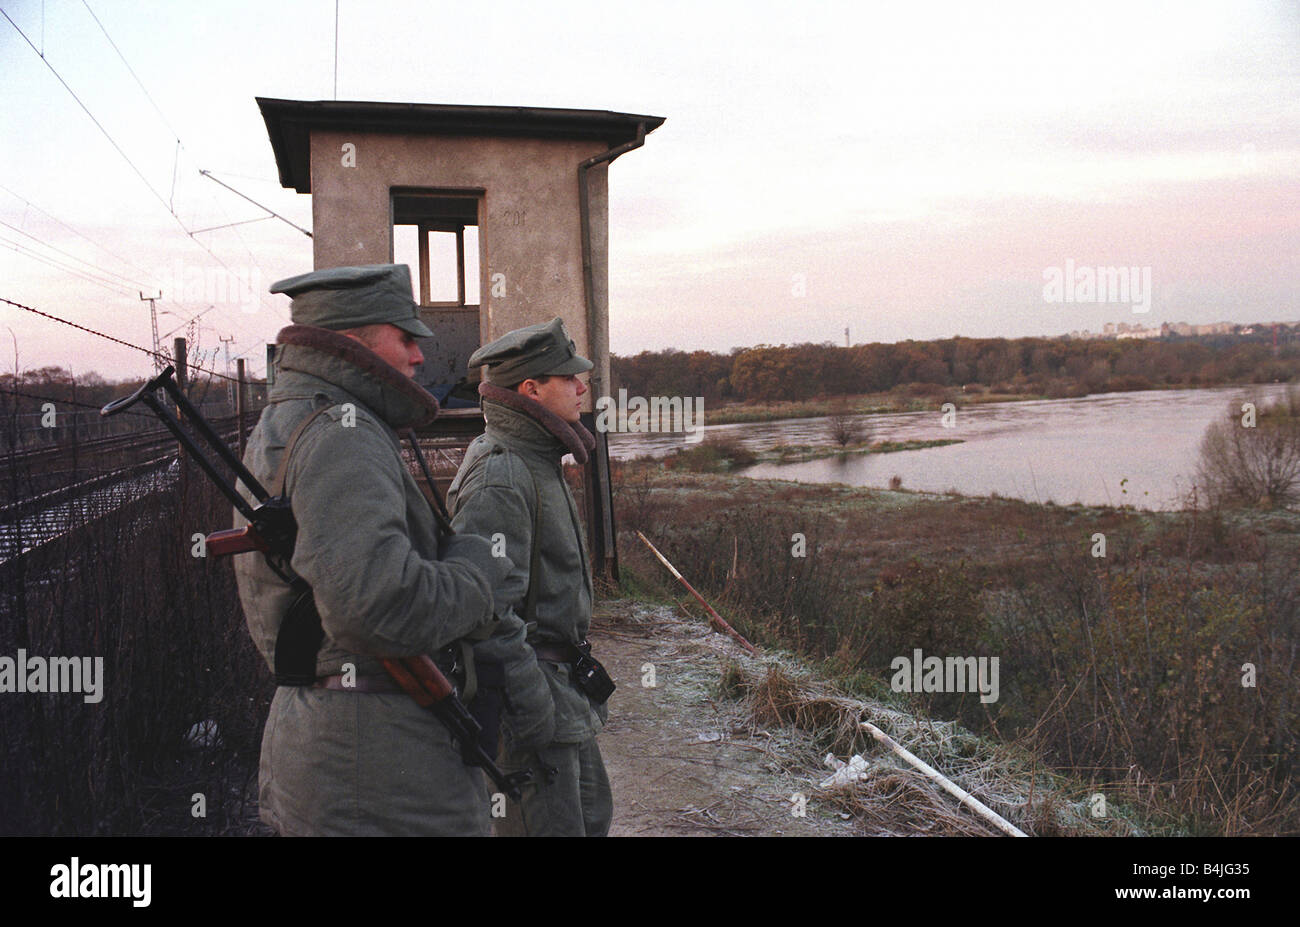 Polish border guard officers on patrol at daybreak at the Polish-German border, Poland Stock Photo